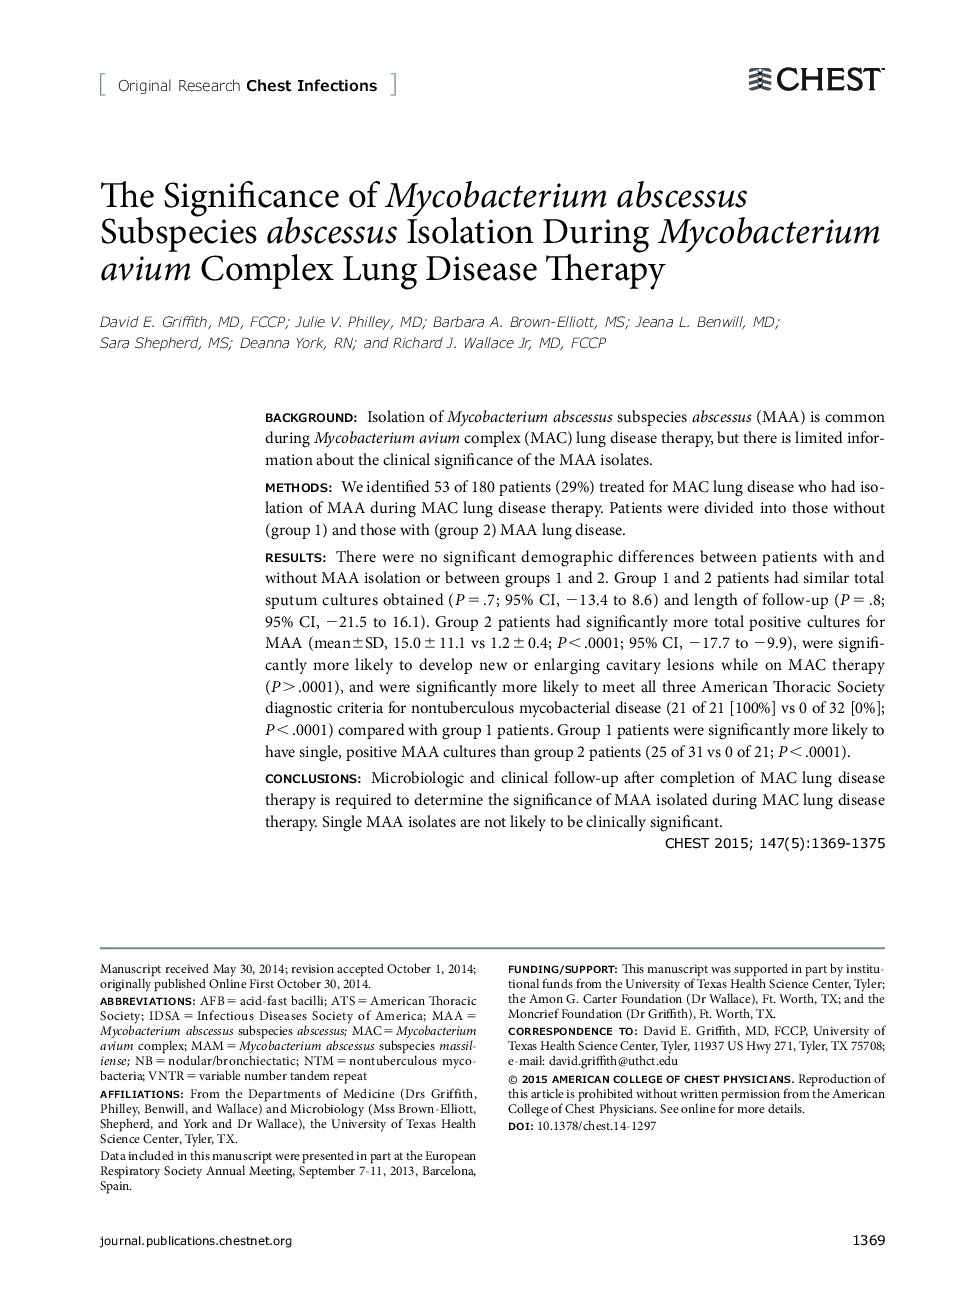 اهمیت جداسازی آبسه های زیرزمینی مکیوباکتریوم آبسه در طی بیماری مایکوباکتریوم آویویوس بیماری ریوی 